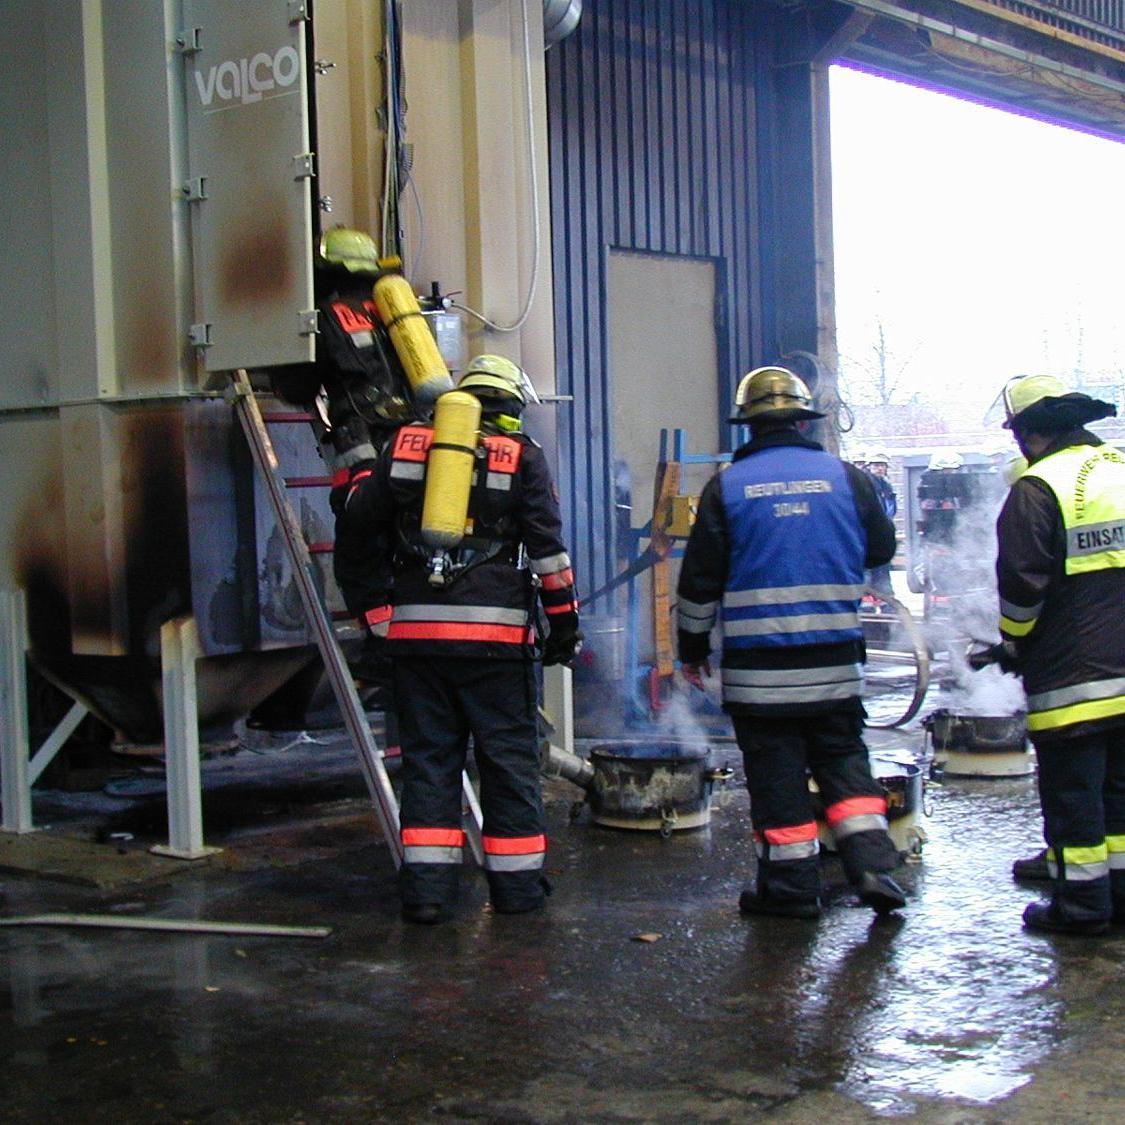 ????: Bilder der freiwilligen Feuerwehr Abteilung Mittelstadt - Einsatz Still Wagner (Quelle: Daniel Kern)